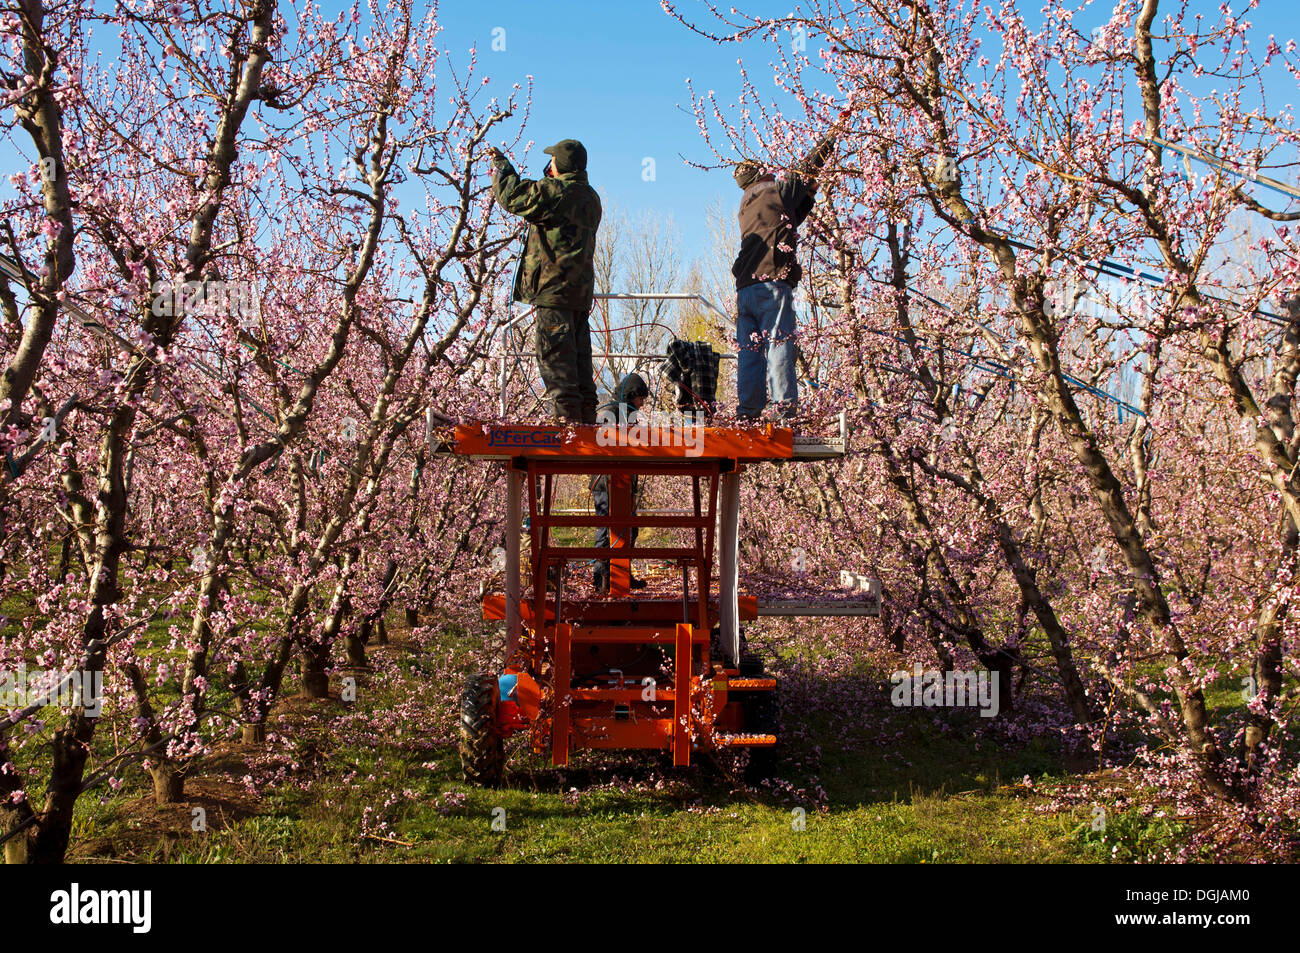 Gärtner in einem Obstgarten Pfirsiche (Prunus Persica) schneiden, während sie, Castelnou, Pyrénées-Orientales, Frankreich blühen Stockfoto